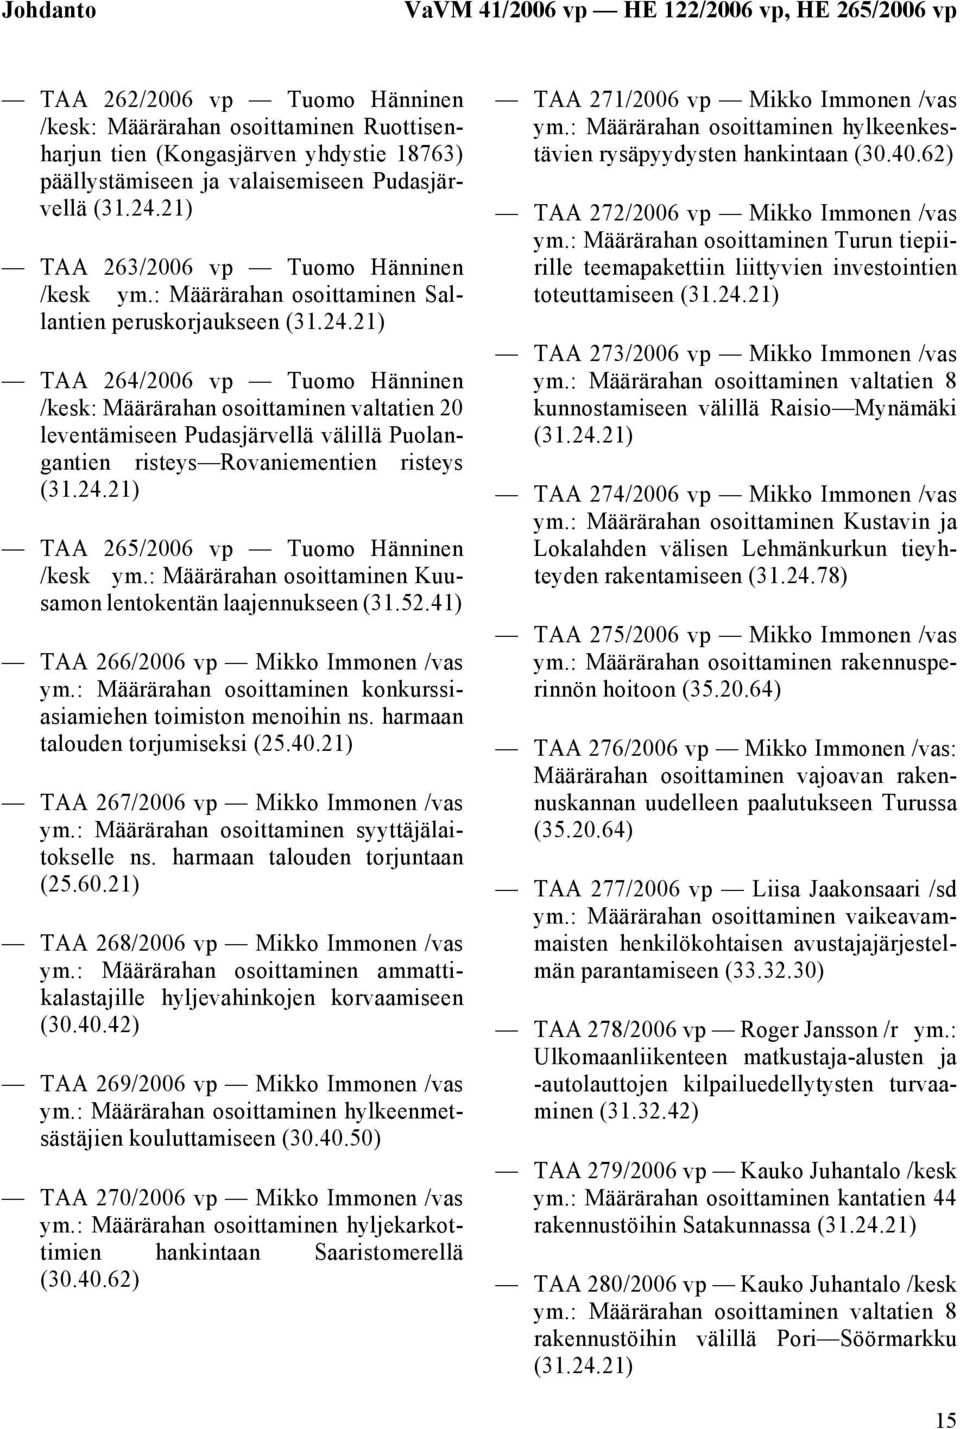 : Määrärahan osoittaminen Sallantien peruskorjaukseen TAA 264/2006 vp Tuomo Hänninen /kesk: Määrärahan osoittaminen valtatien 20 leventämiseen Pudasjärvellä välillä Puolangantien risteys